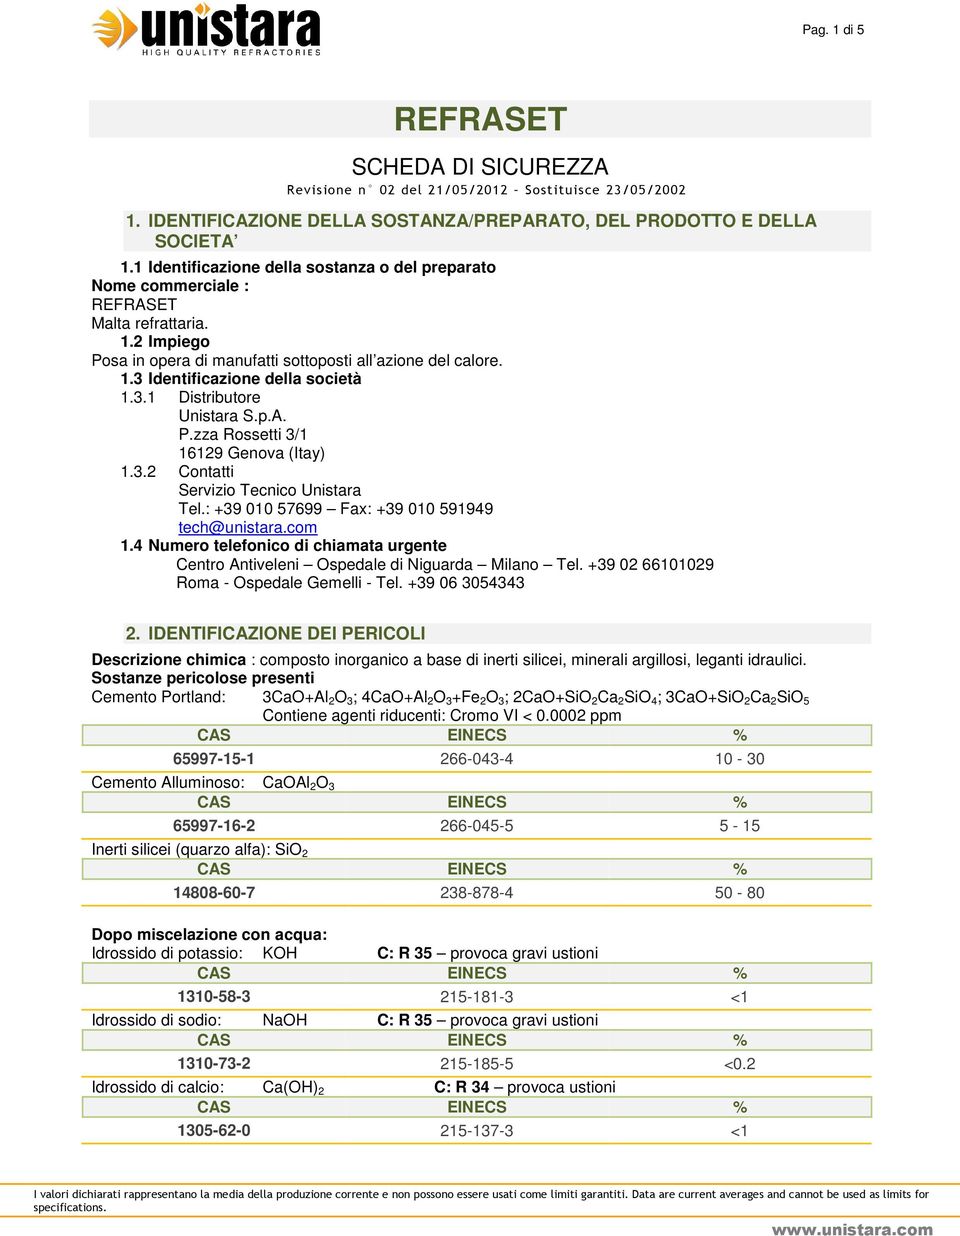 3.1 Distributore Unistara S.p.A. P.zza Rossetti 3/1 16129 Genova (Itay) 1.3.2 Contatti Servizio Tecnico Unistara Tel.: +39 010 57699 Fax: +39 010 591949 tech@unistara.com 1.